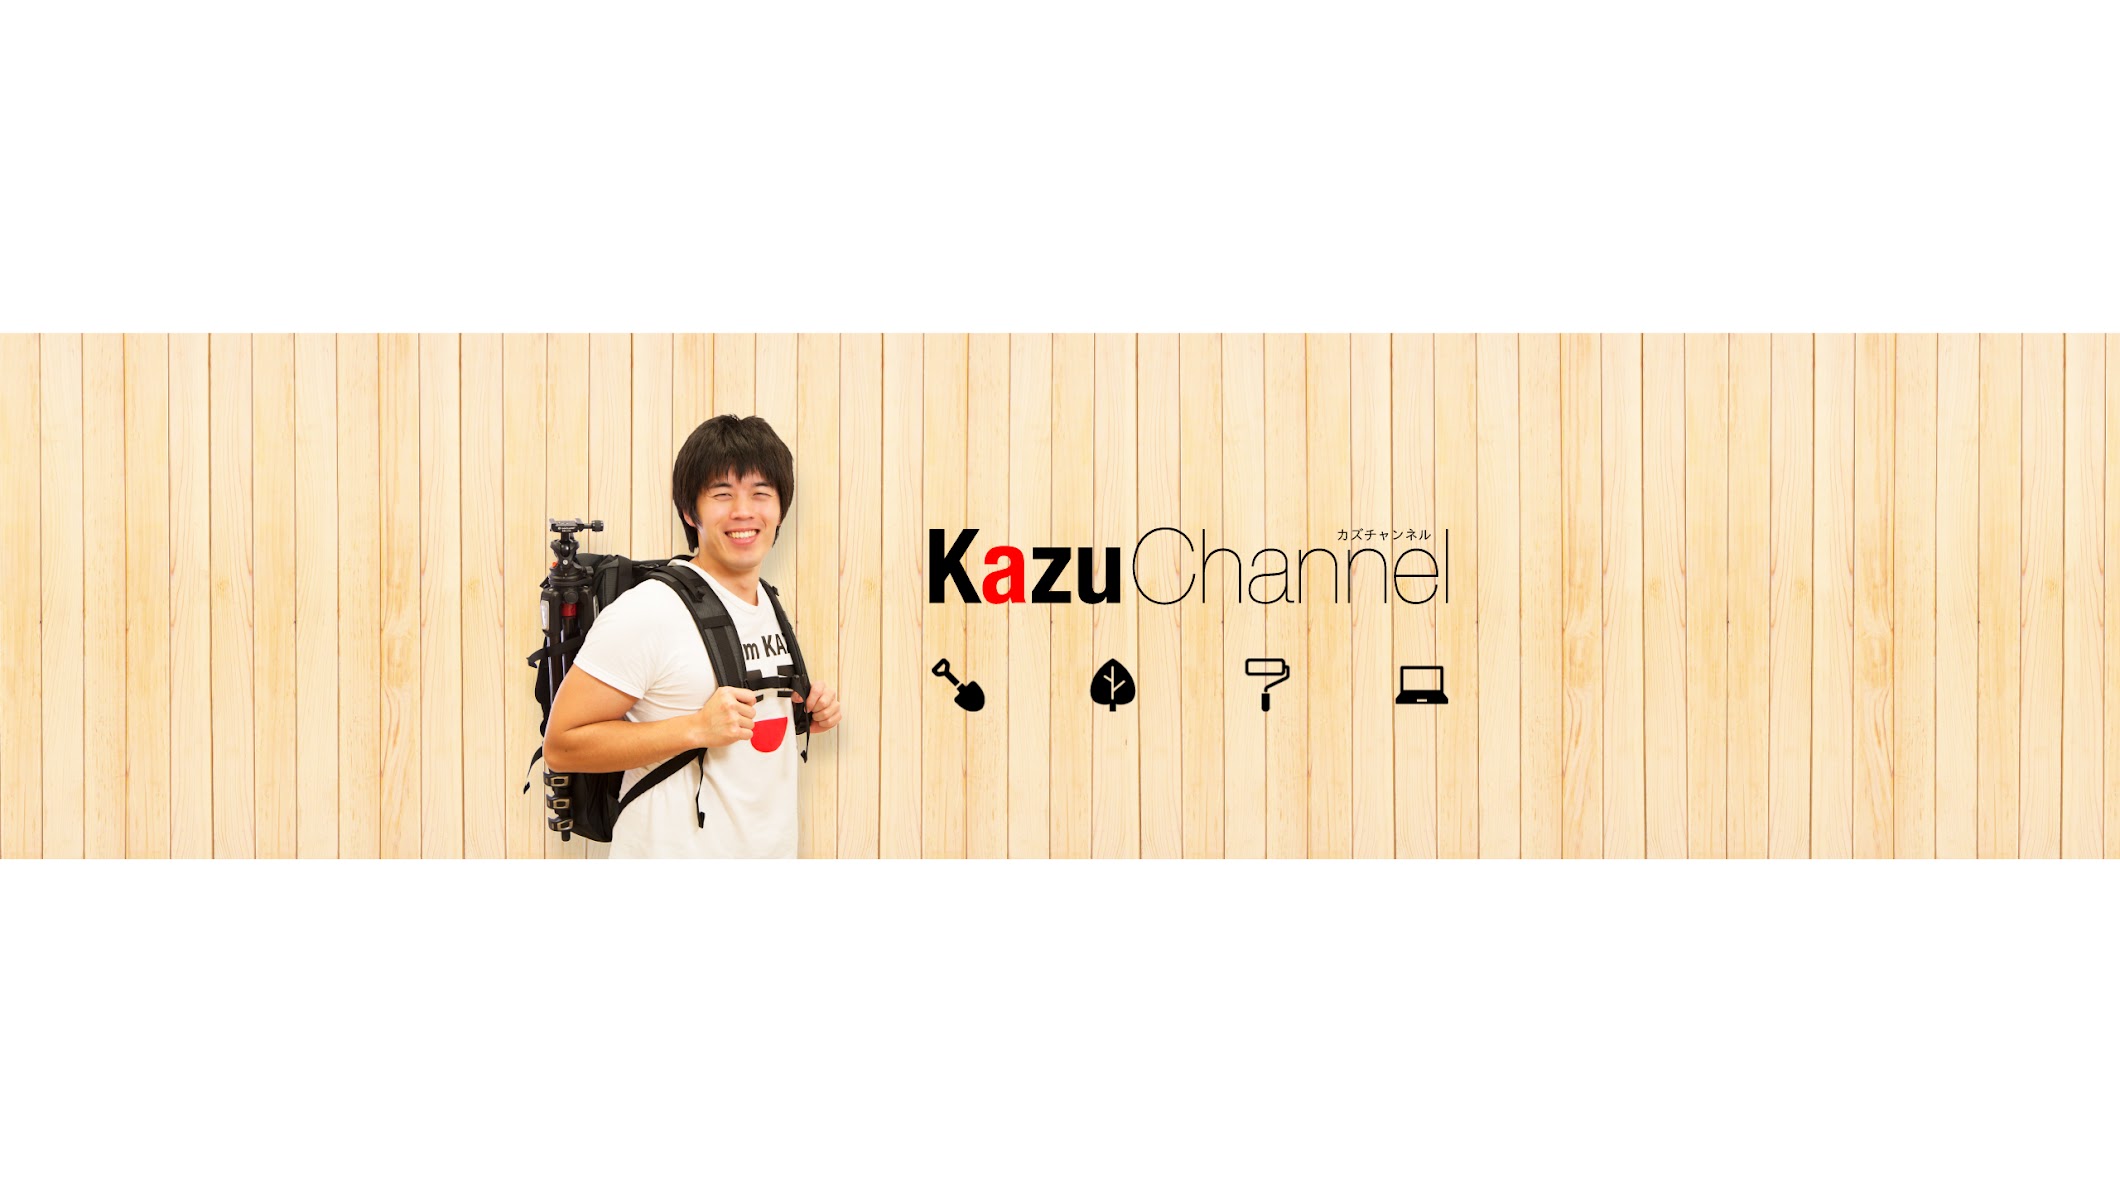 カズチャンネル/Kazu Channel - YouTube